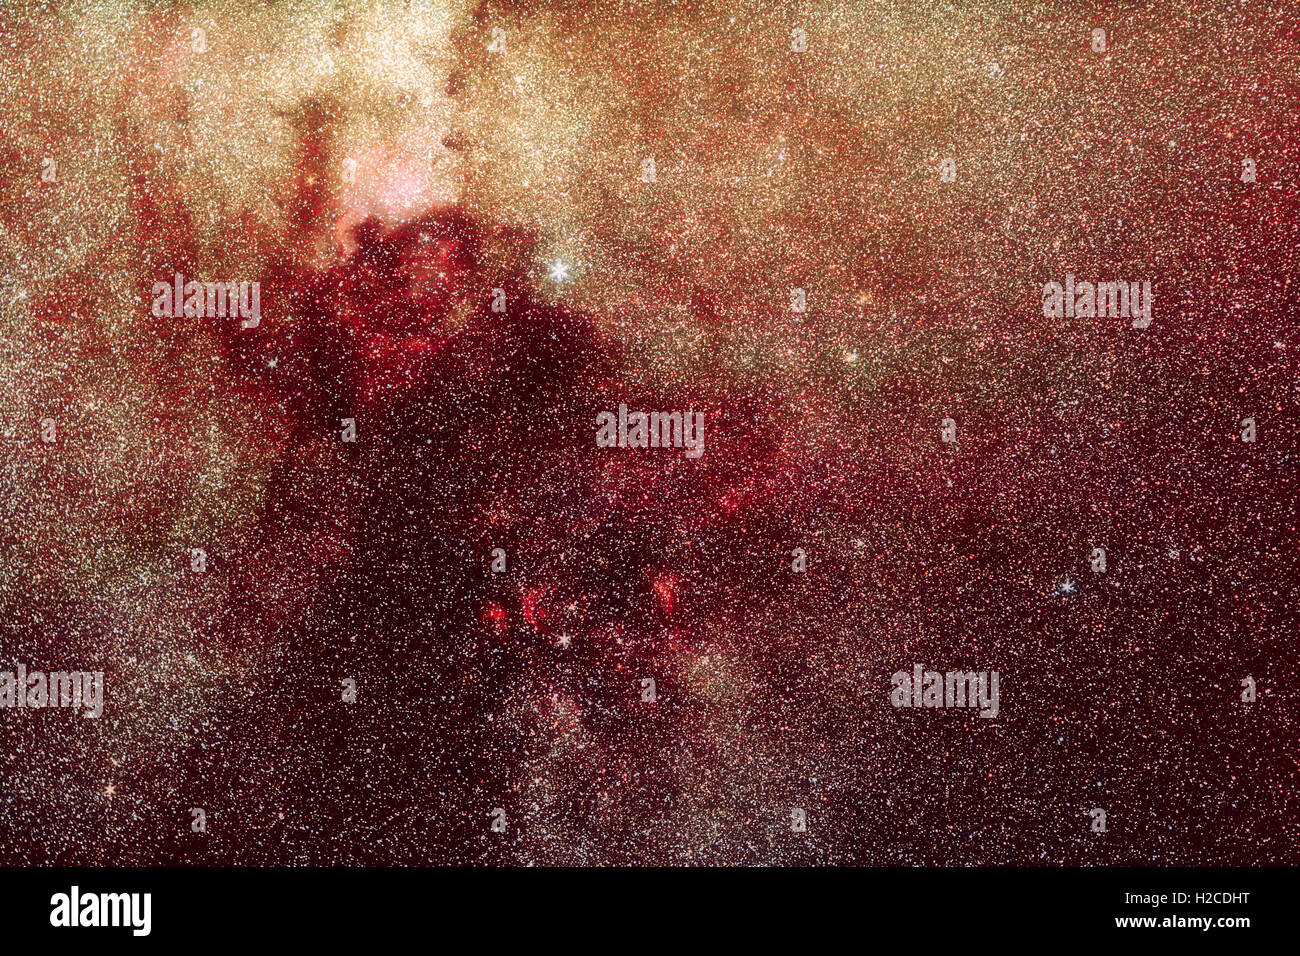 Photo : astronomie univers Voie Lactée dans la constellation du Cygne avec beaucoup d'étoiles et de nébuleuses d'hydrogène rouge Banque D'Images